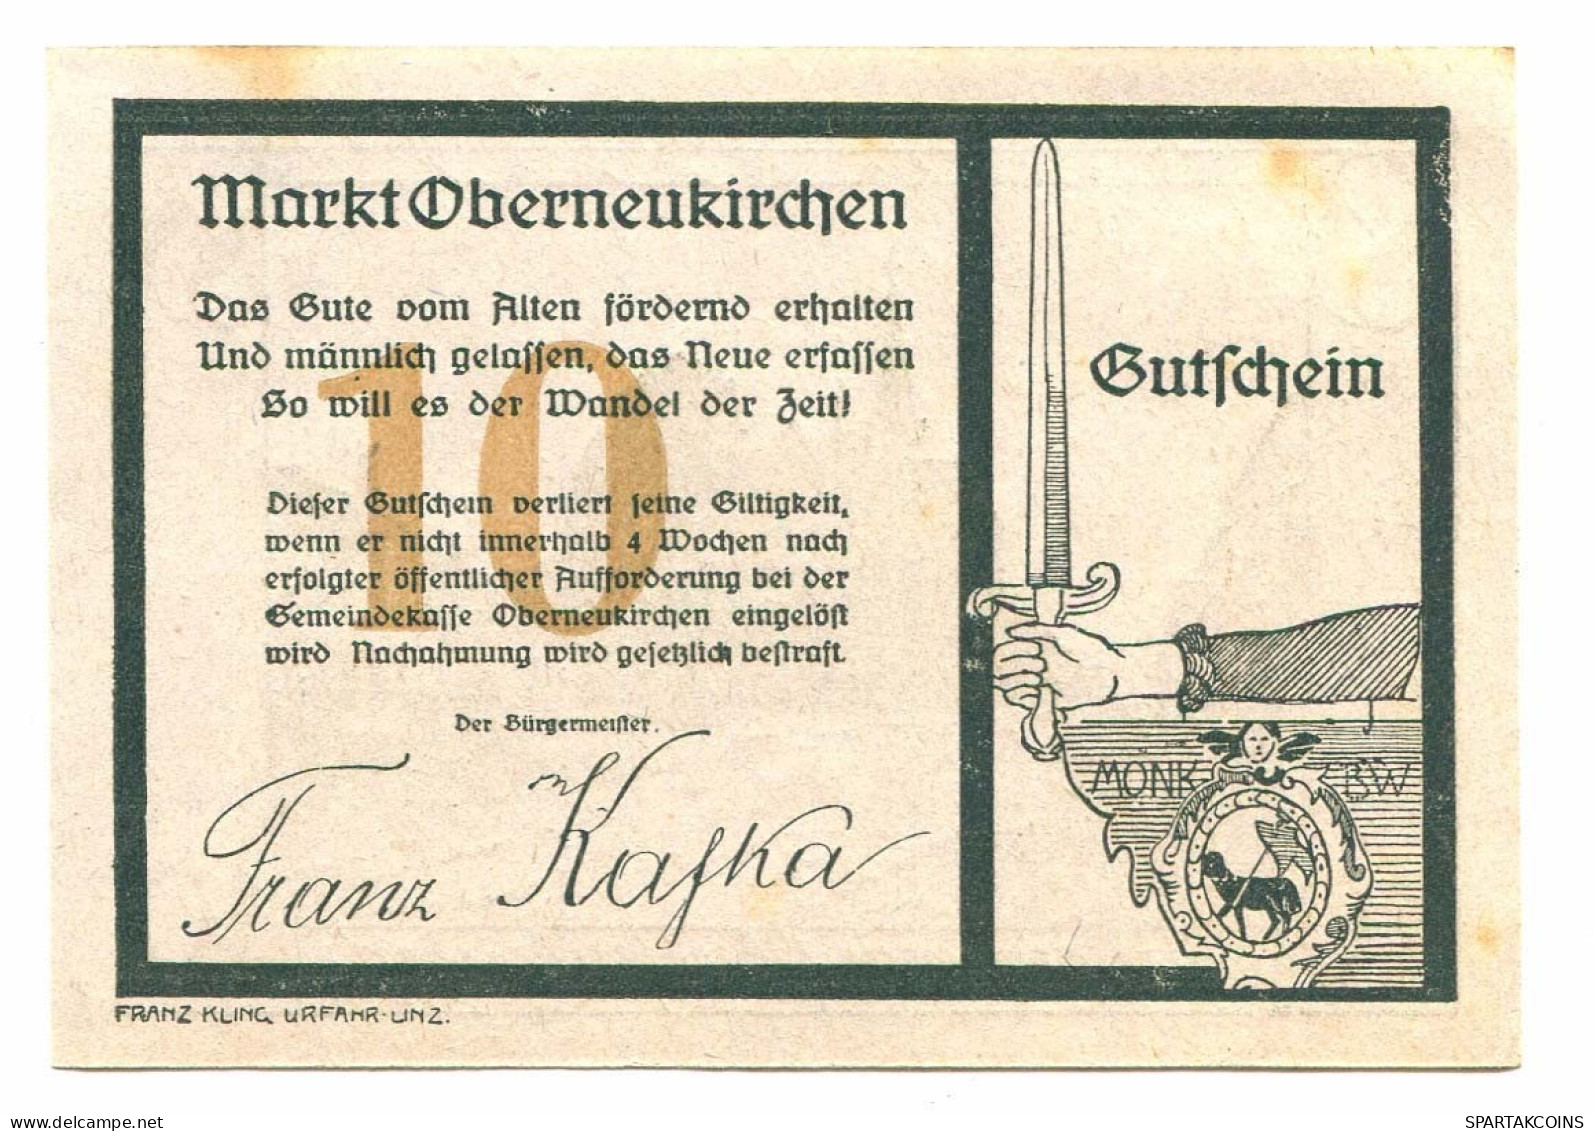 10 Heller 1920 OBERNEUKIRCHEN Österreich UNC Notgeld Papiergeld Banknote #P10439 - [11] Local Banknote Issues